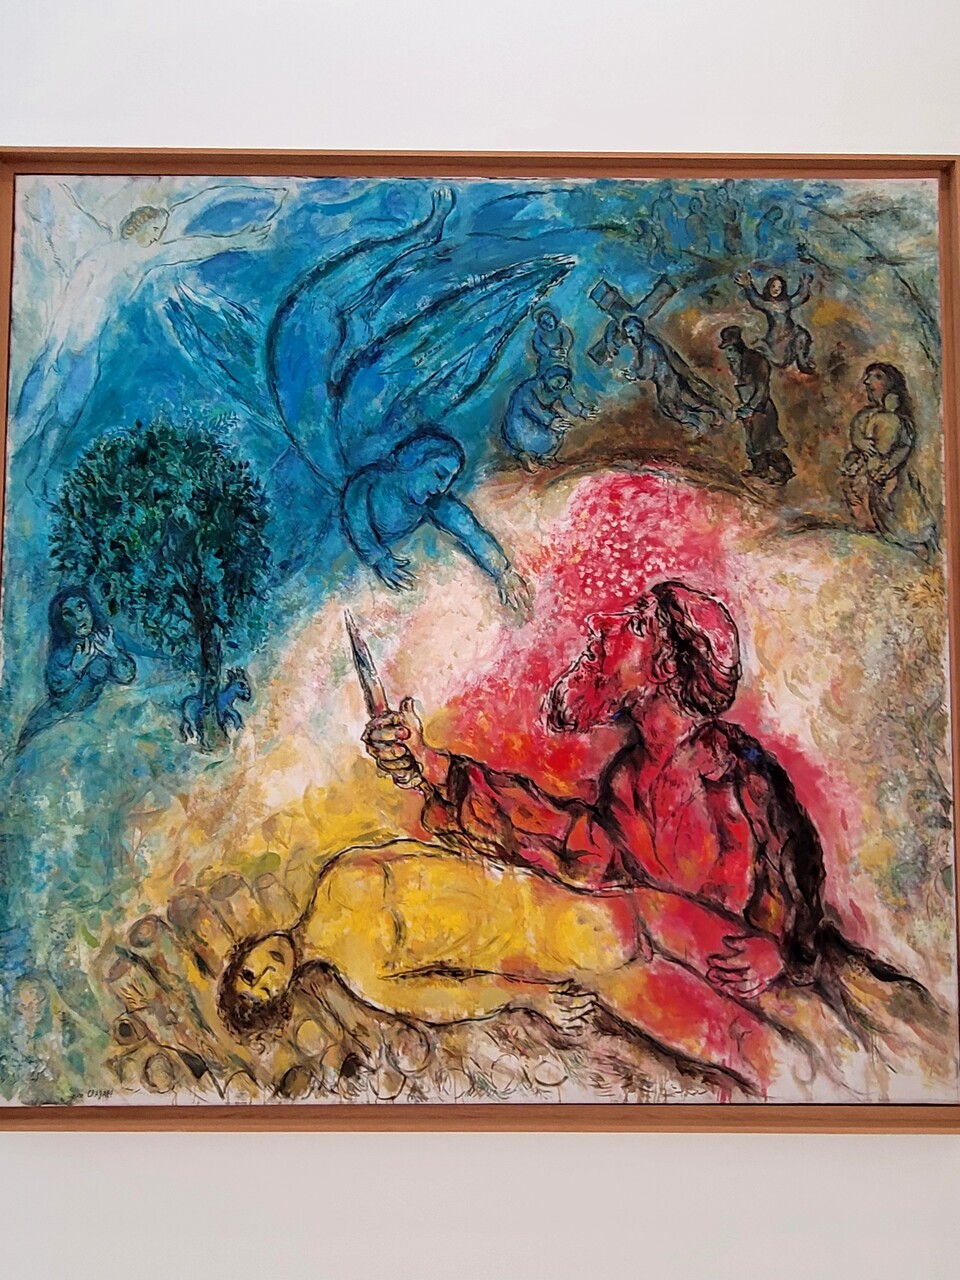 니스에 있는 샤갈 미술관에 있는 창세기 이야기 중에 아브라함이 아들 이삭을 제물로 바치는 그림